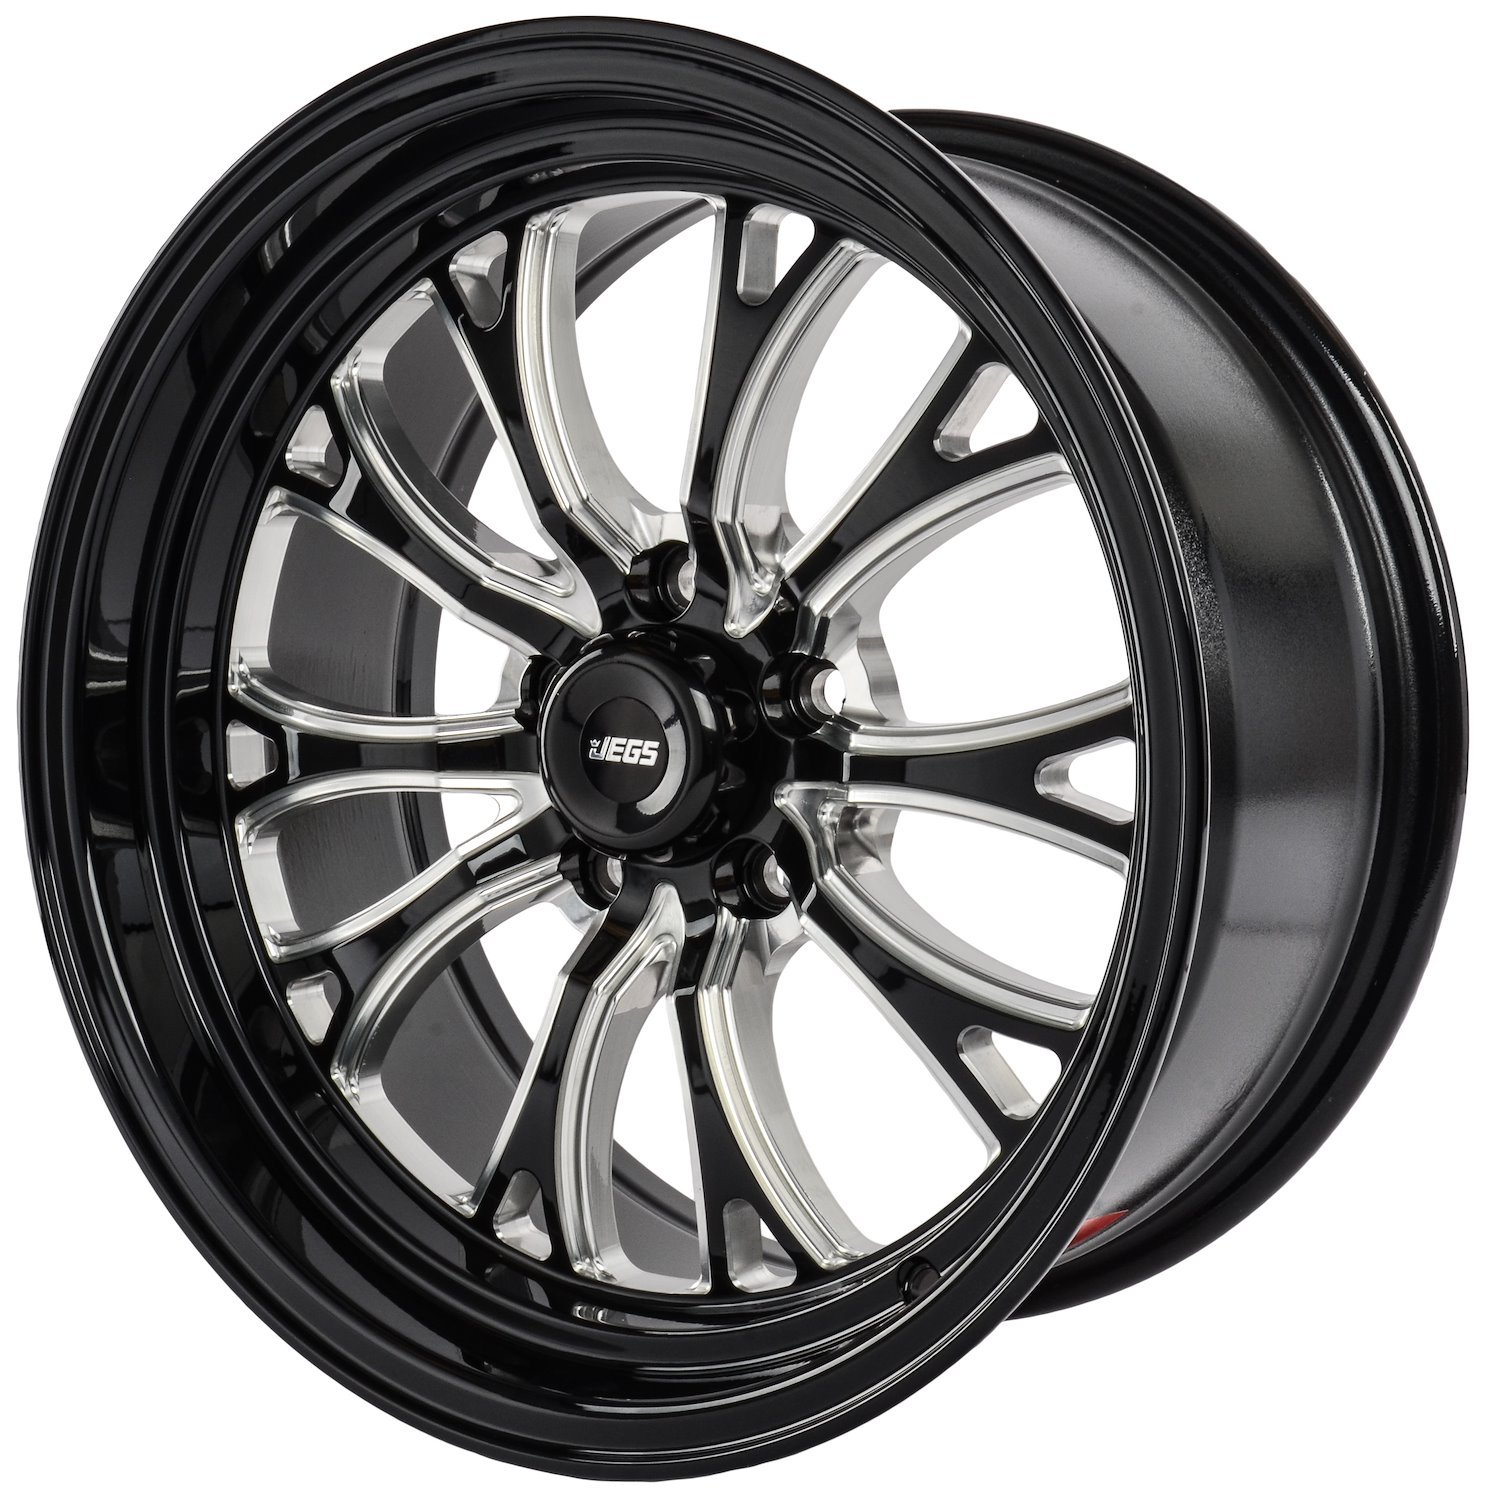 SSR Spike Wheel [Size: 17 in. x 7 in.] Gloss Black